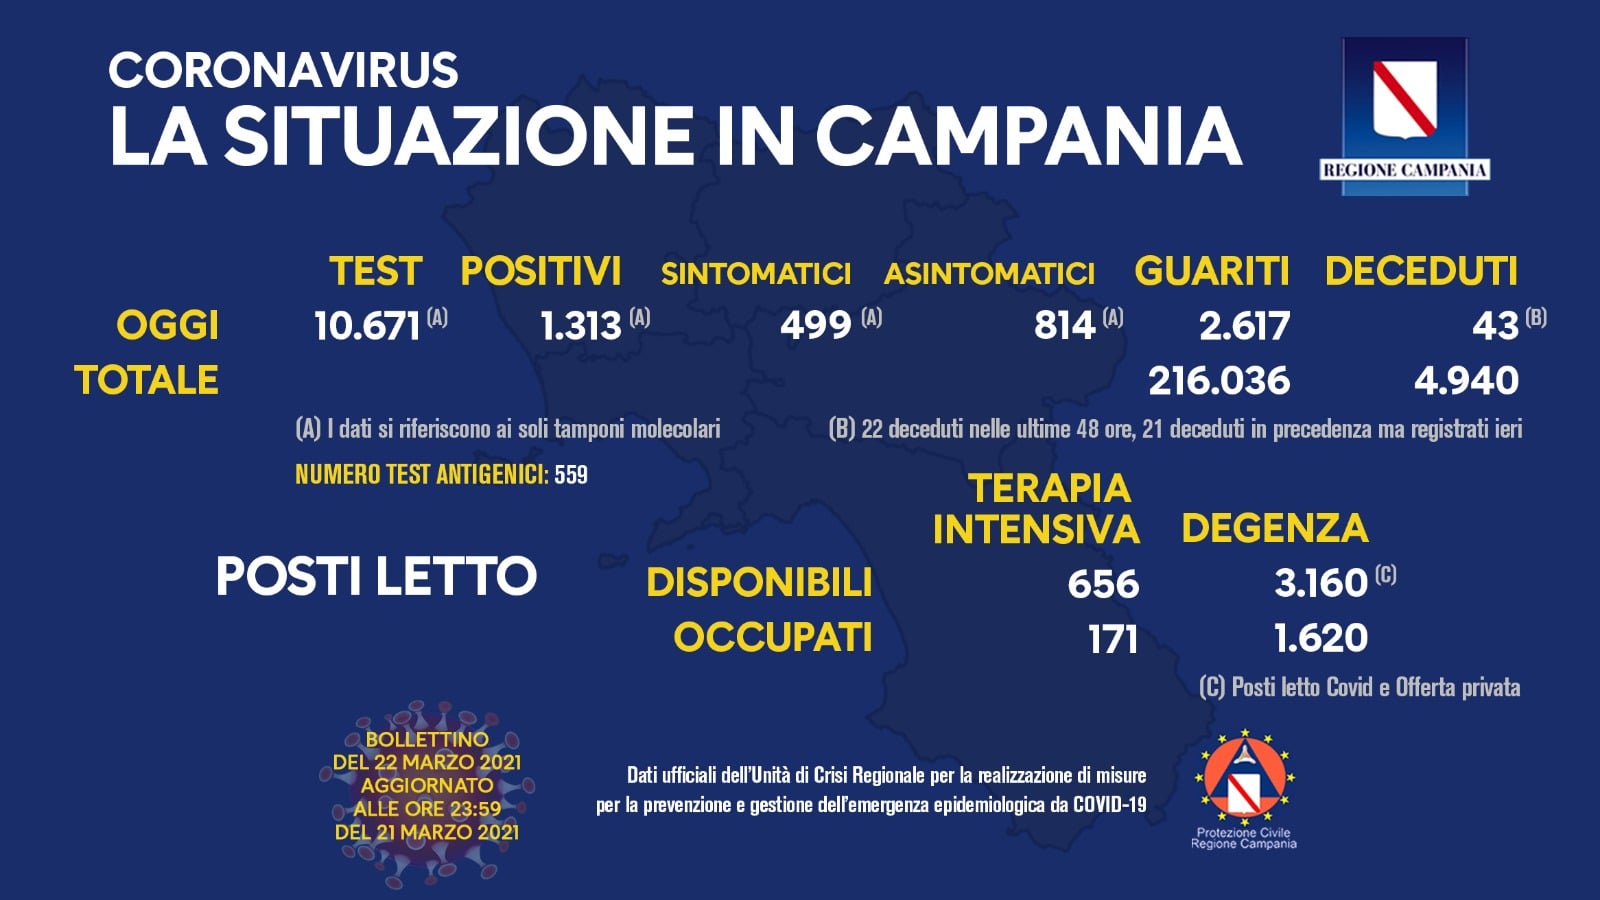 Campania, 1313 positivi su poco più di 10mila tamponi. Il tasso è al 12,3%